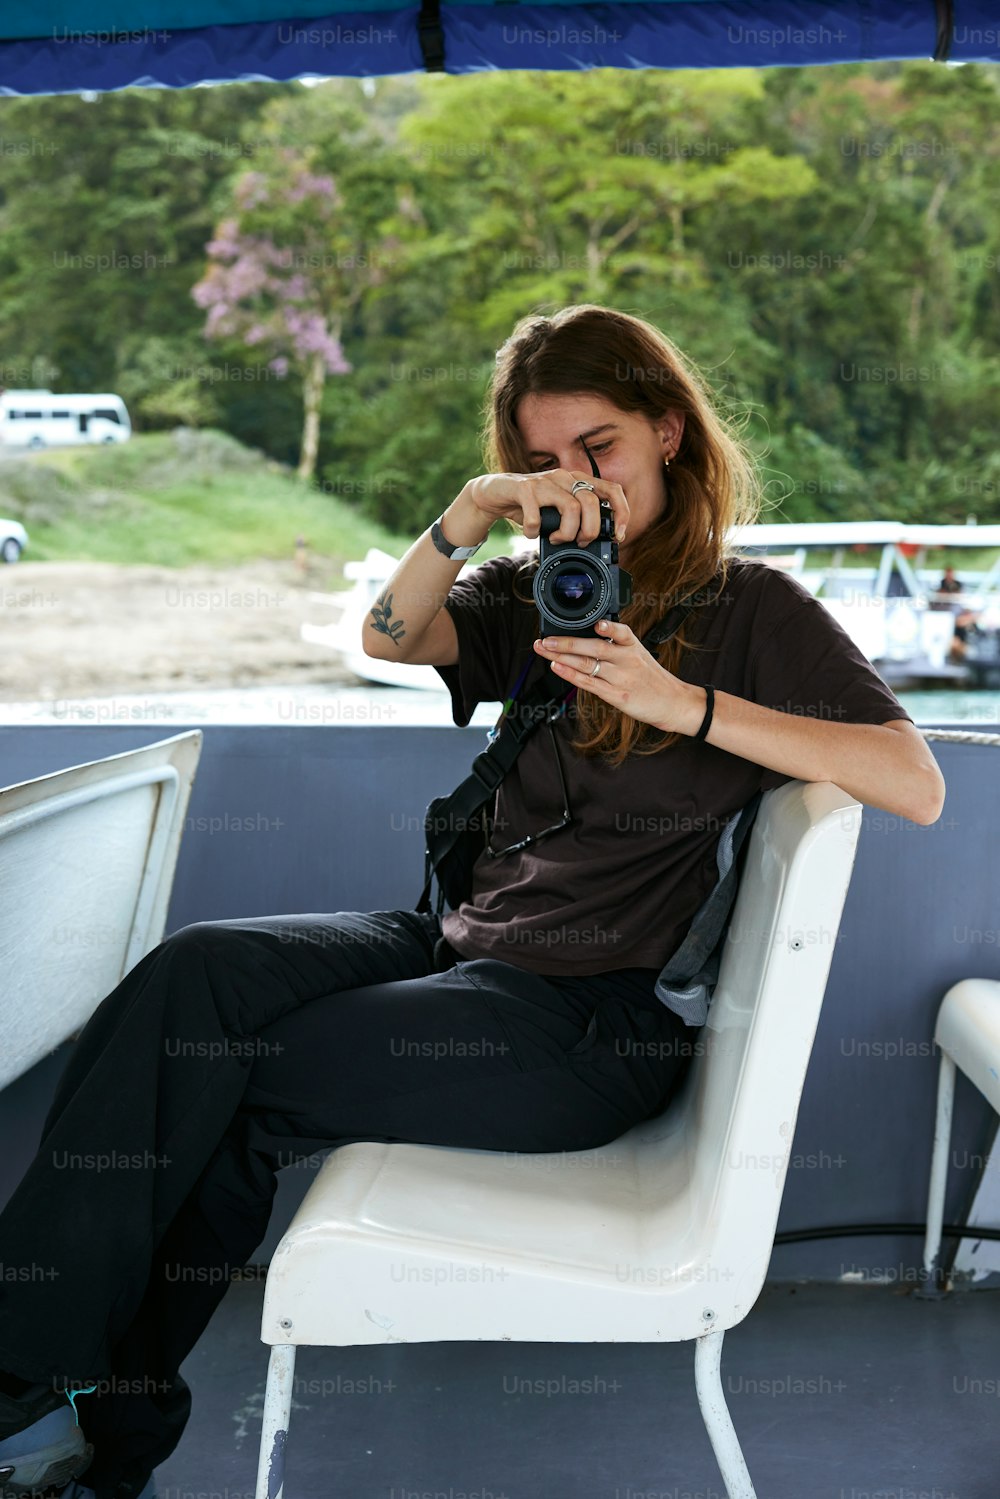 Una mujer sentada en una silla sosteniendo una cámara